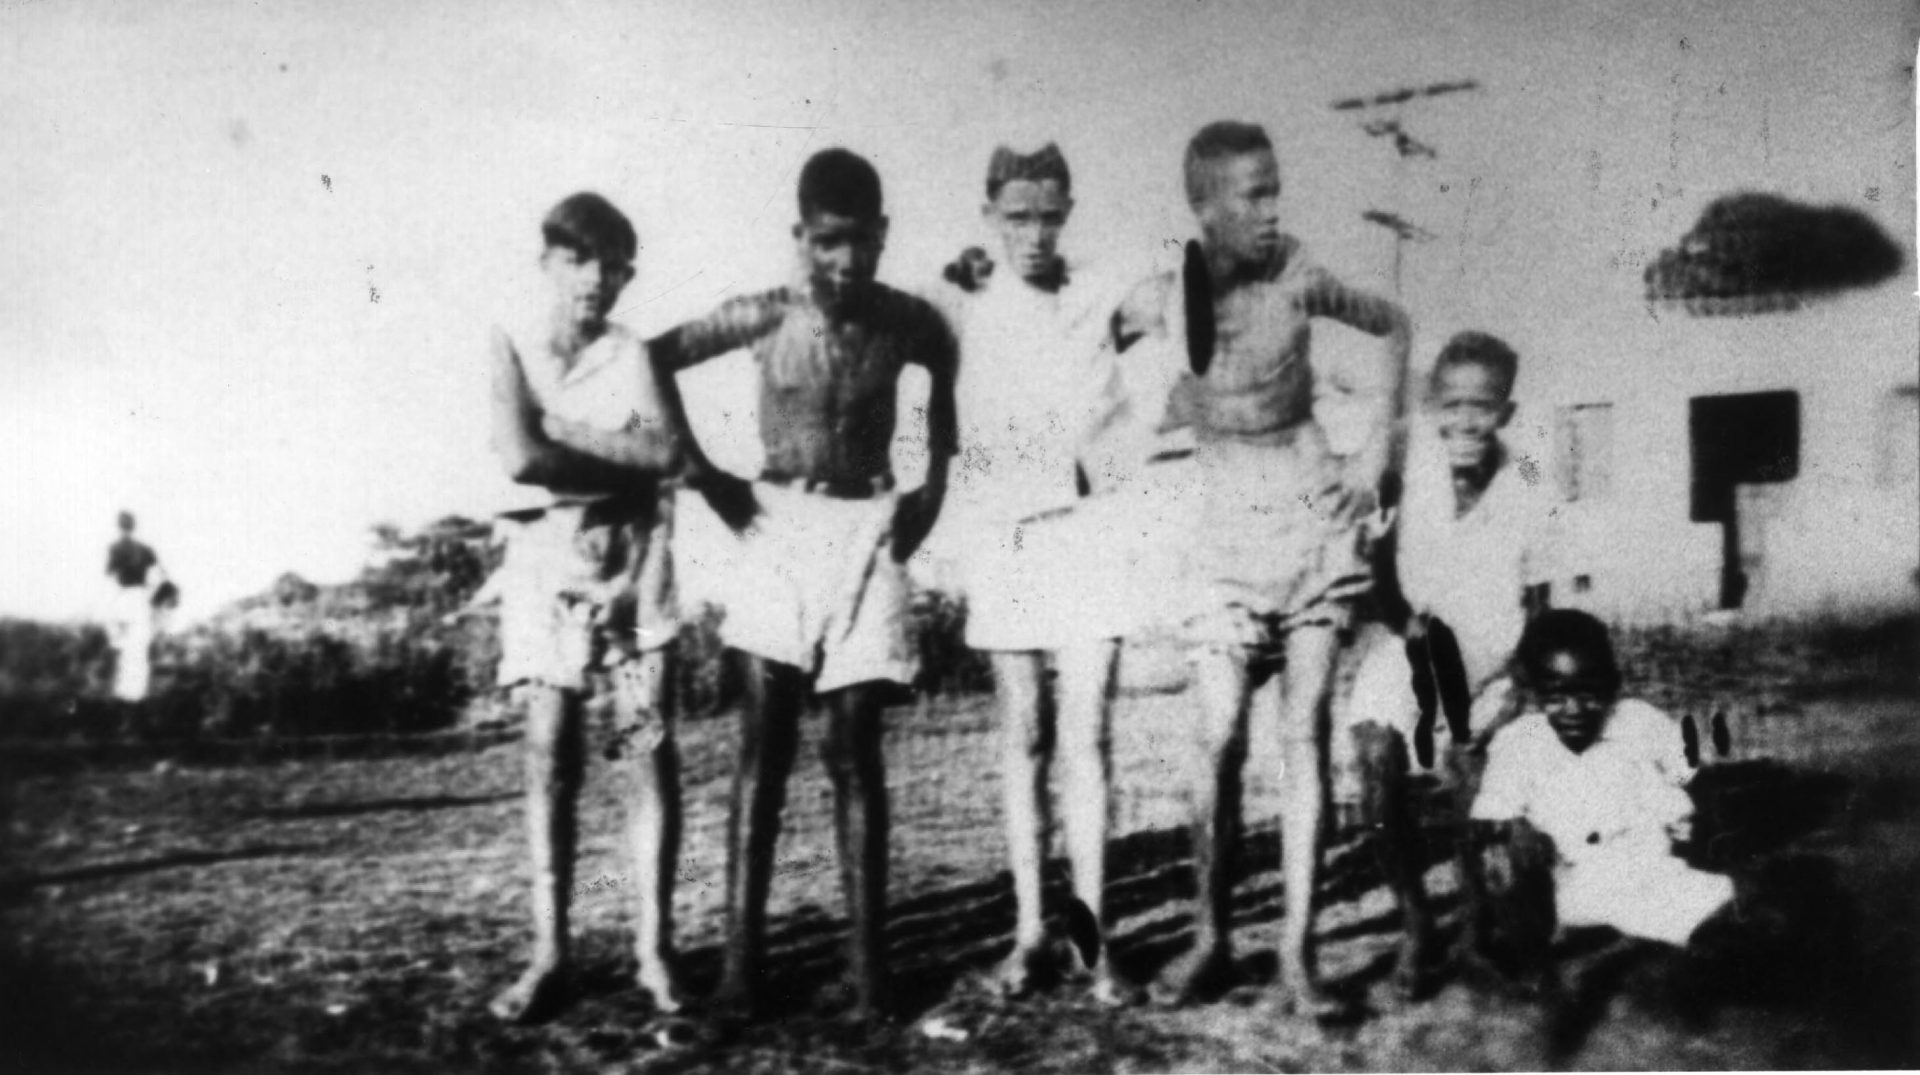 Imagem de 1945 mostra Pelé (agachado à direita)já fâ de futebol, aos 5 anos de idade, quando era conhecido como Dico - Foto: Arquivo/Estadão